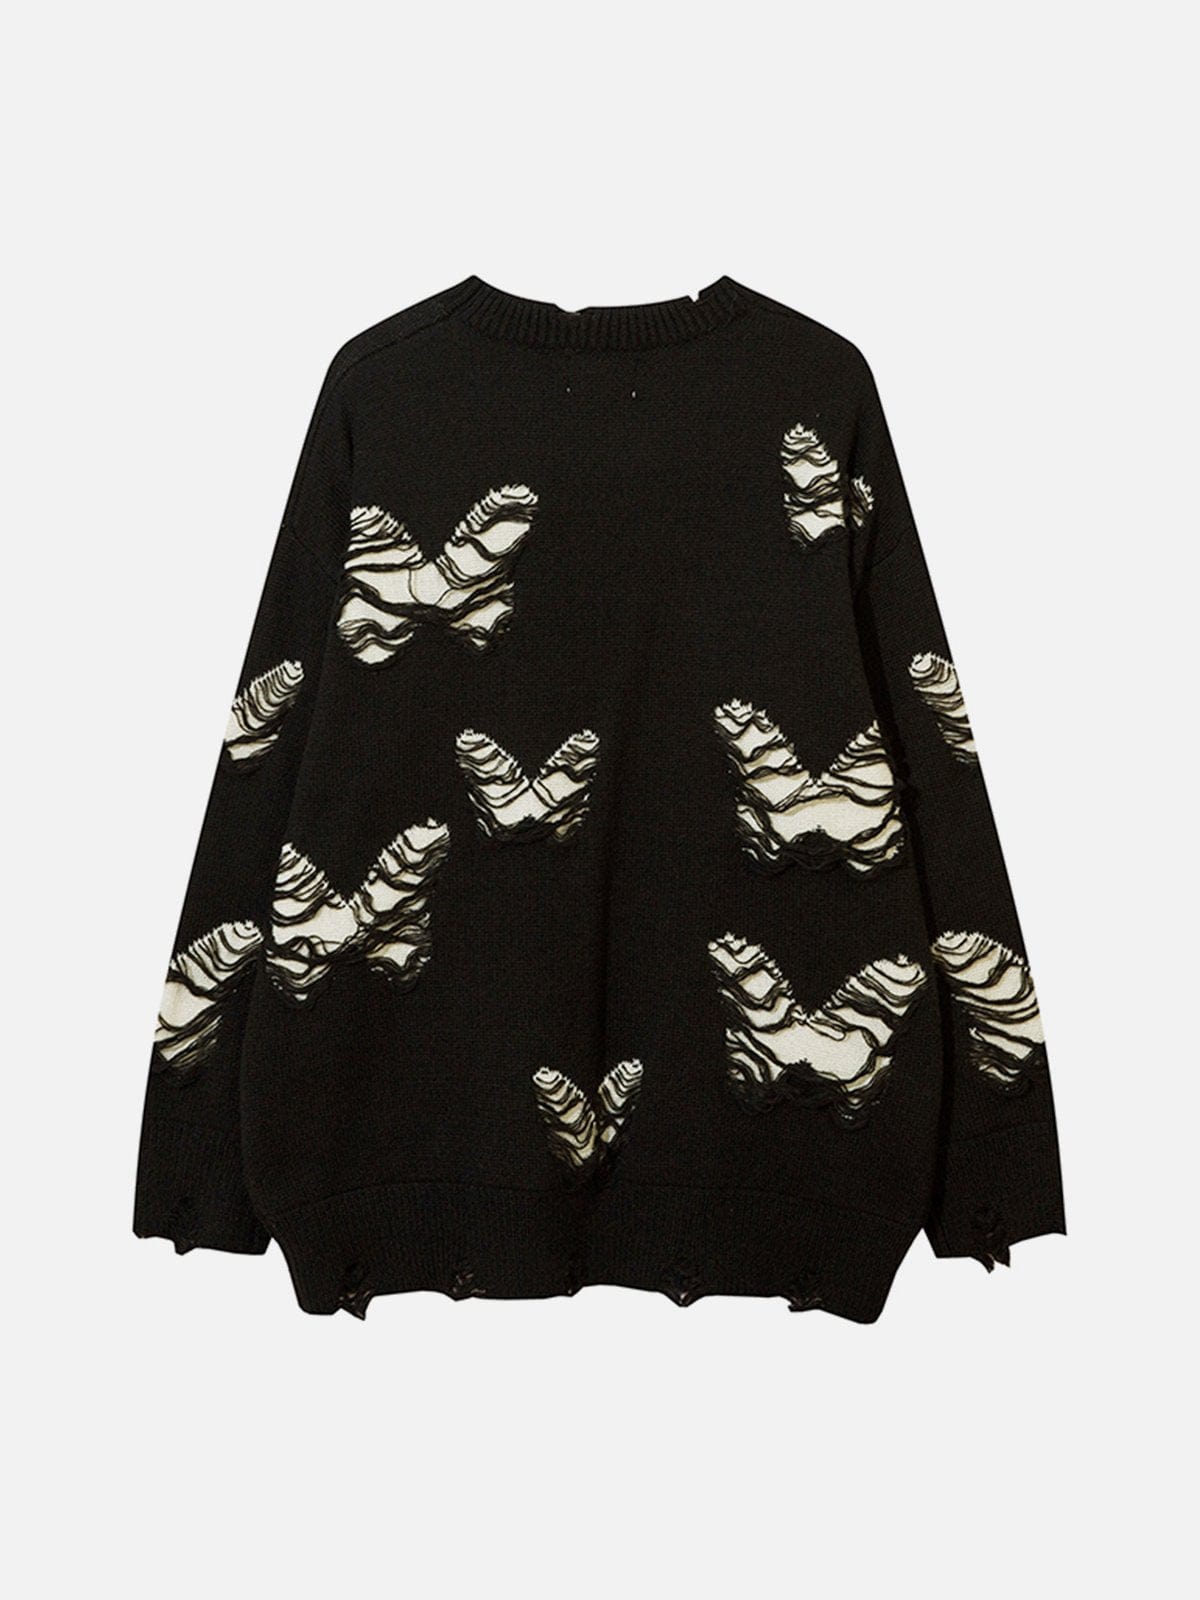 Hole Butterfly Sweater Streetwear Brand Techwear Combat Tactical YUGEN THEORY